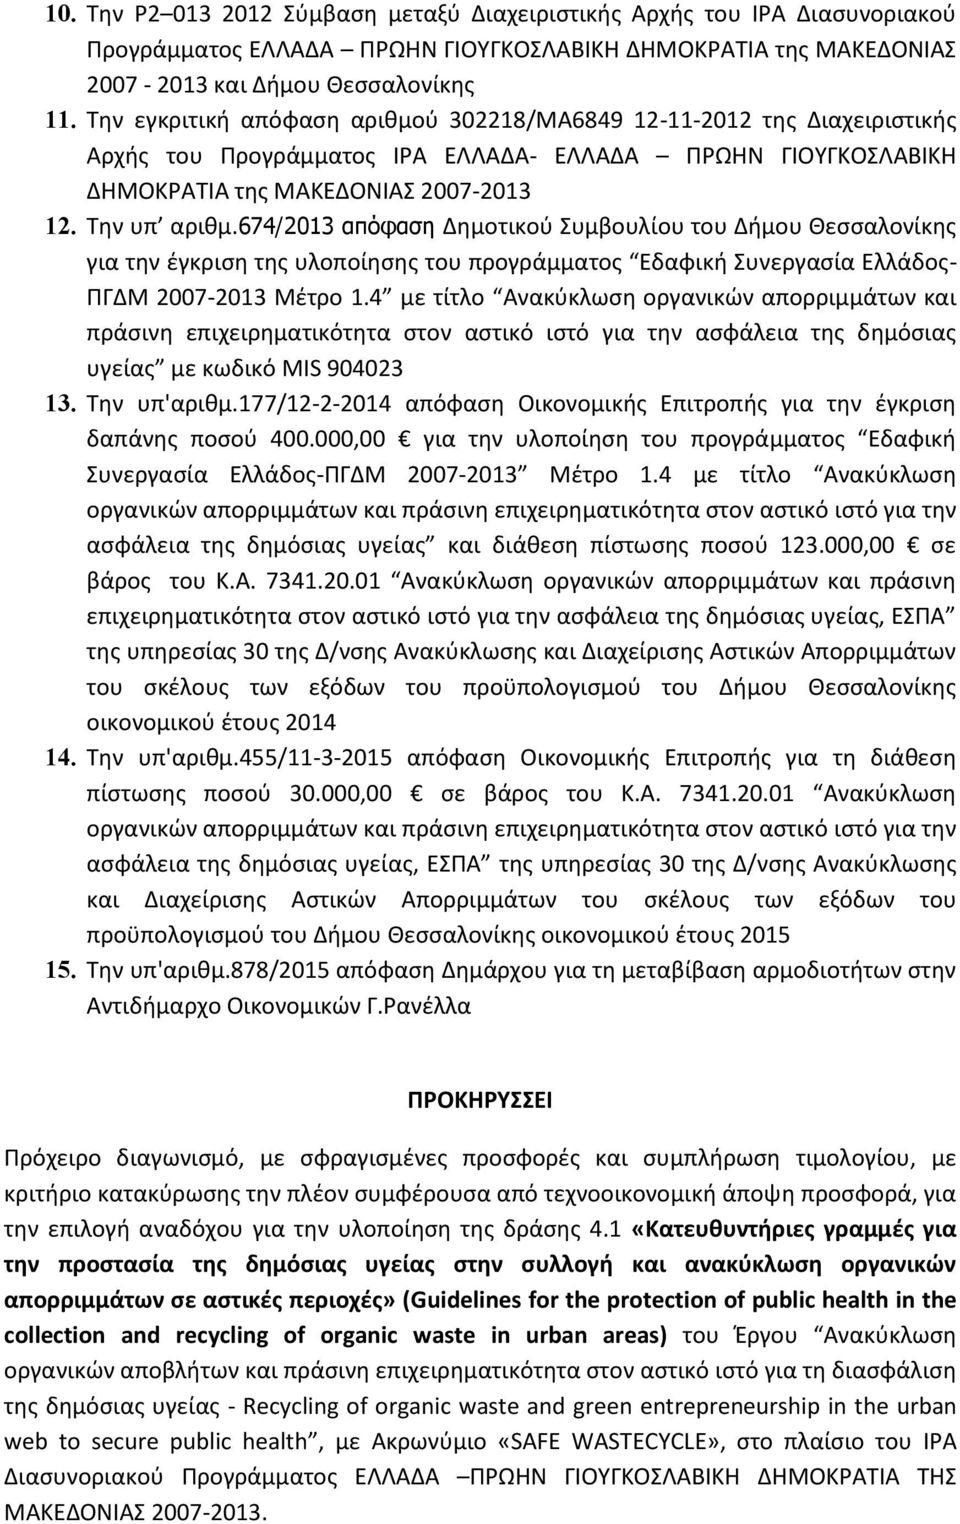 674/2013 απόφαση Δημοτικού Συμβουλίου του Δήμου Θεσσαλονίκης για την έγκριση της υλοποίησης του προγράμματος Εδαφική Συνεργασία Ελλάδος- ΠΓΔΜ 2007-2013 Μέτρο 1.